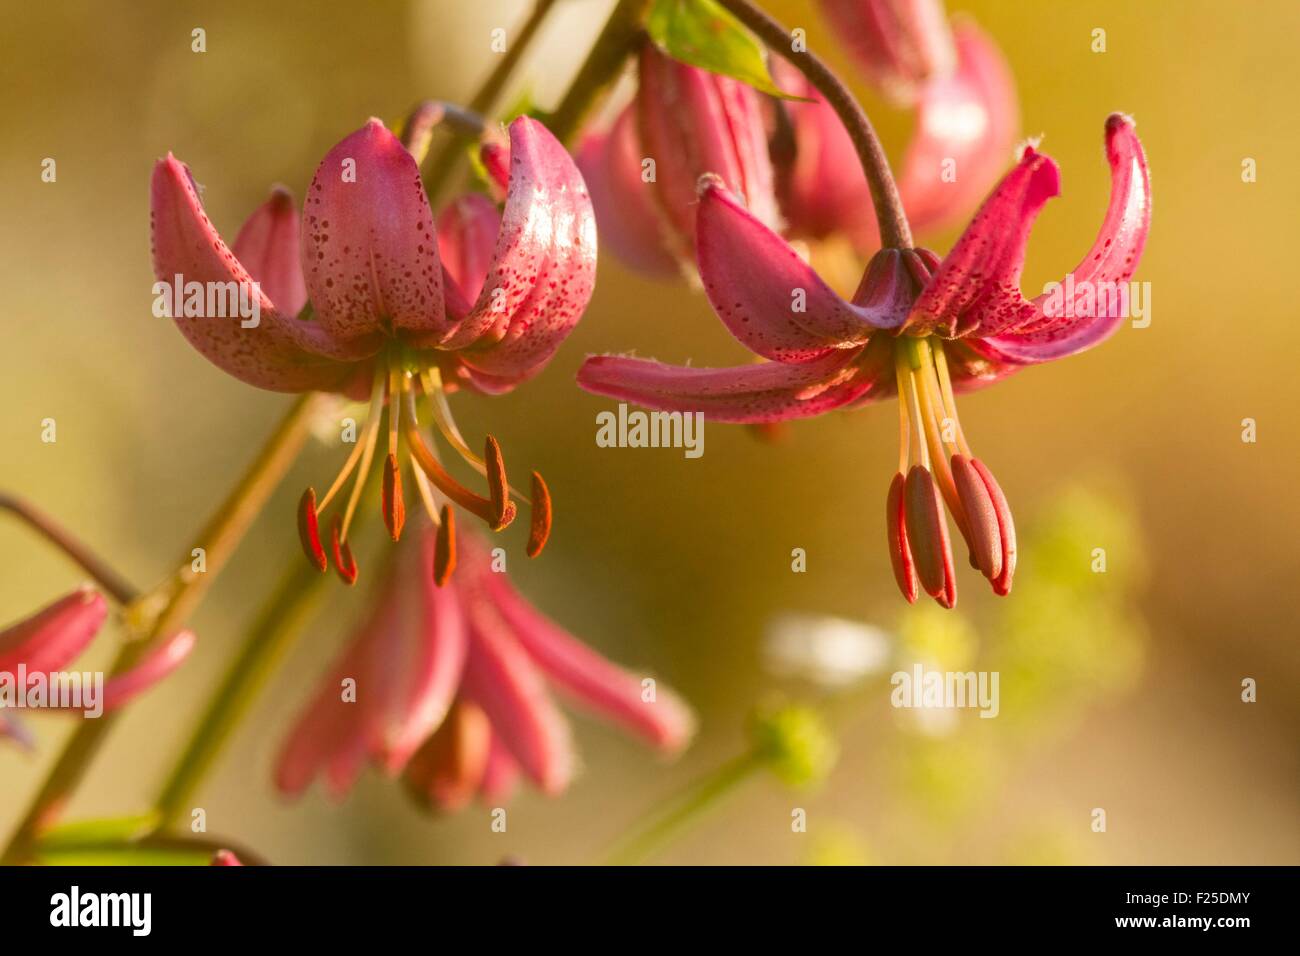 Francia, Cantal, Prat de bouc pass, Martagon Lily (Lilium martagon), protezione a livello regionale Foto Stock